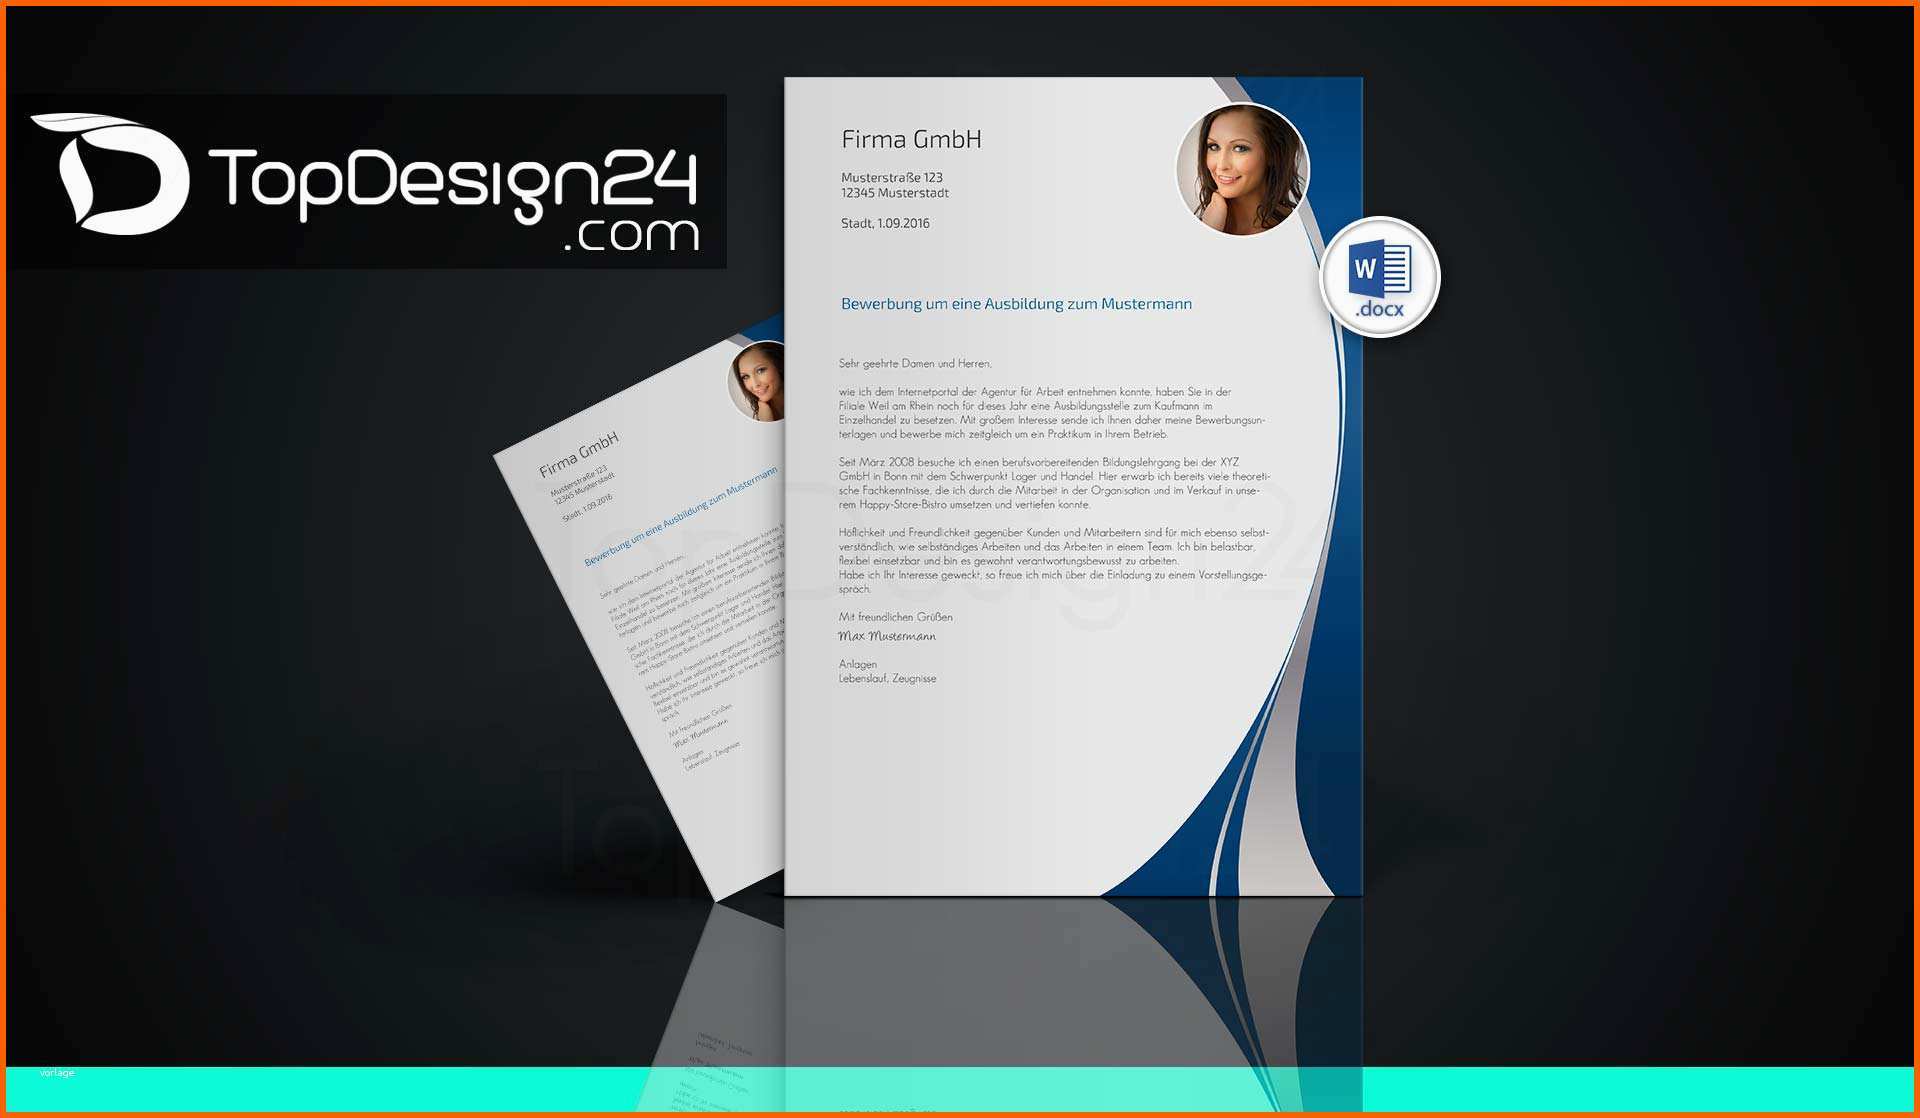 Ausgezeichnet Bewerbung Designvorlagen topdesign24 Bewerbungsvorlagen